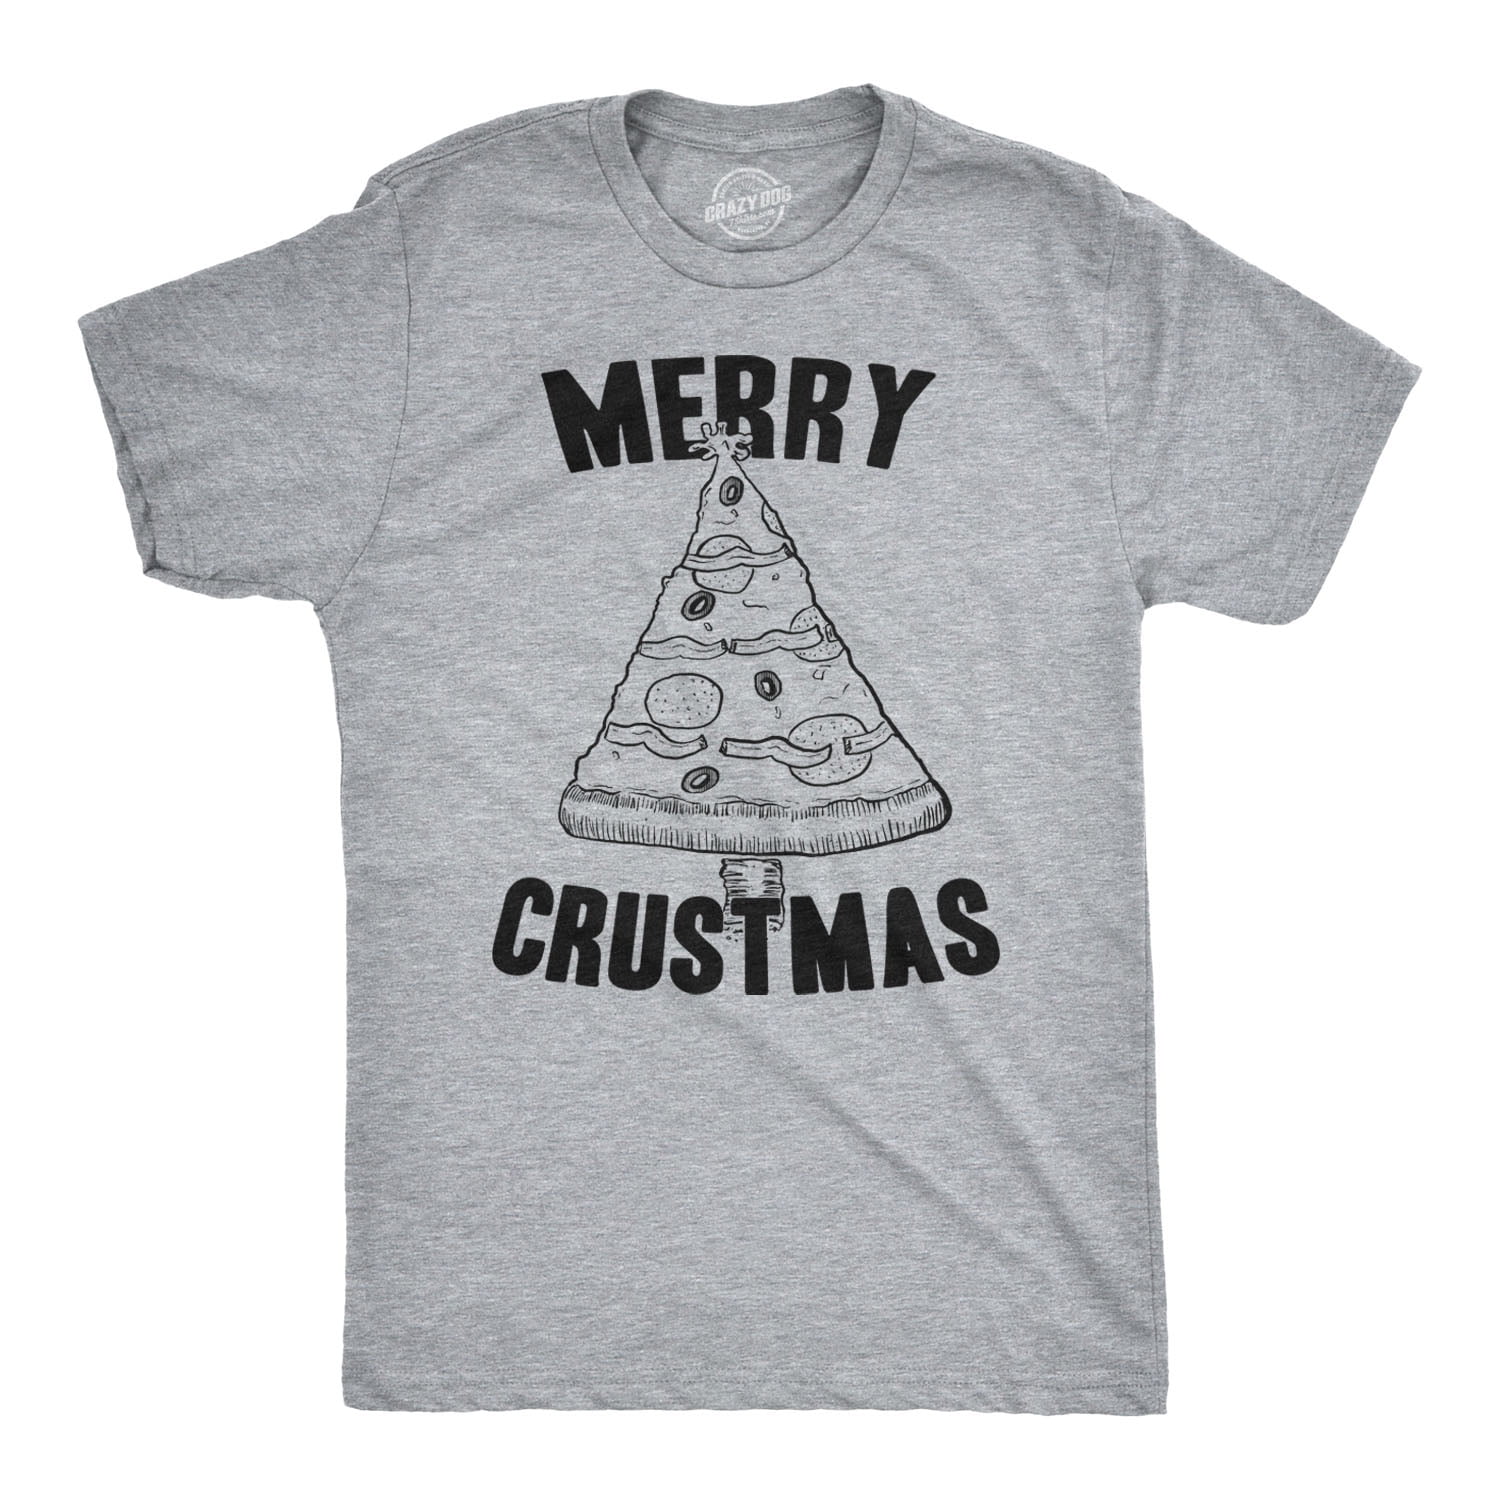 Merry Crustmas Shirt Men's Christmas Shirt Ugly Christmas Tshirt Christmas Gifts 